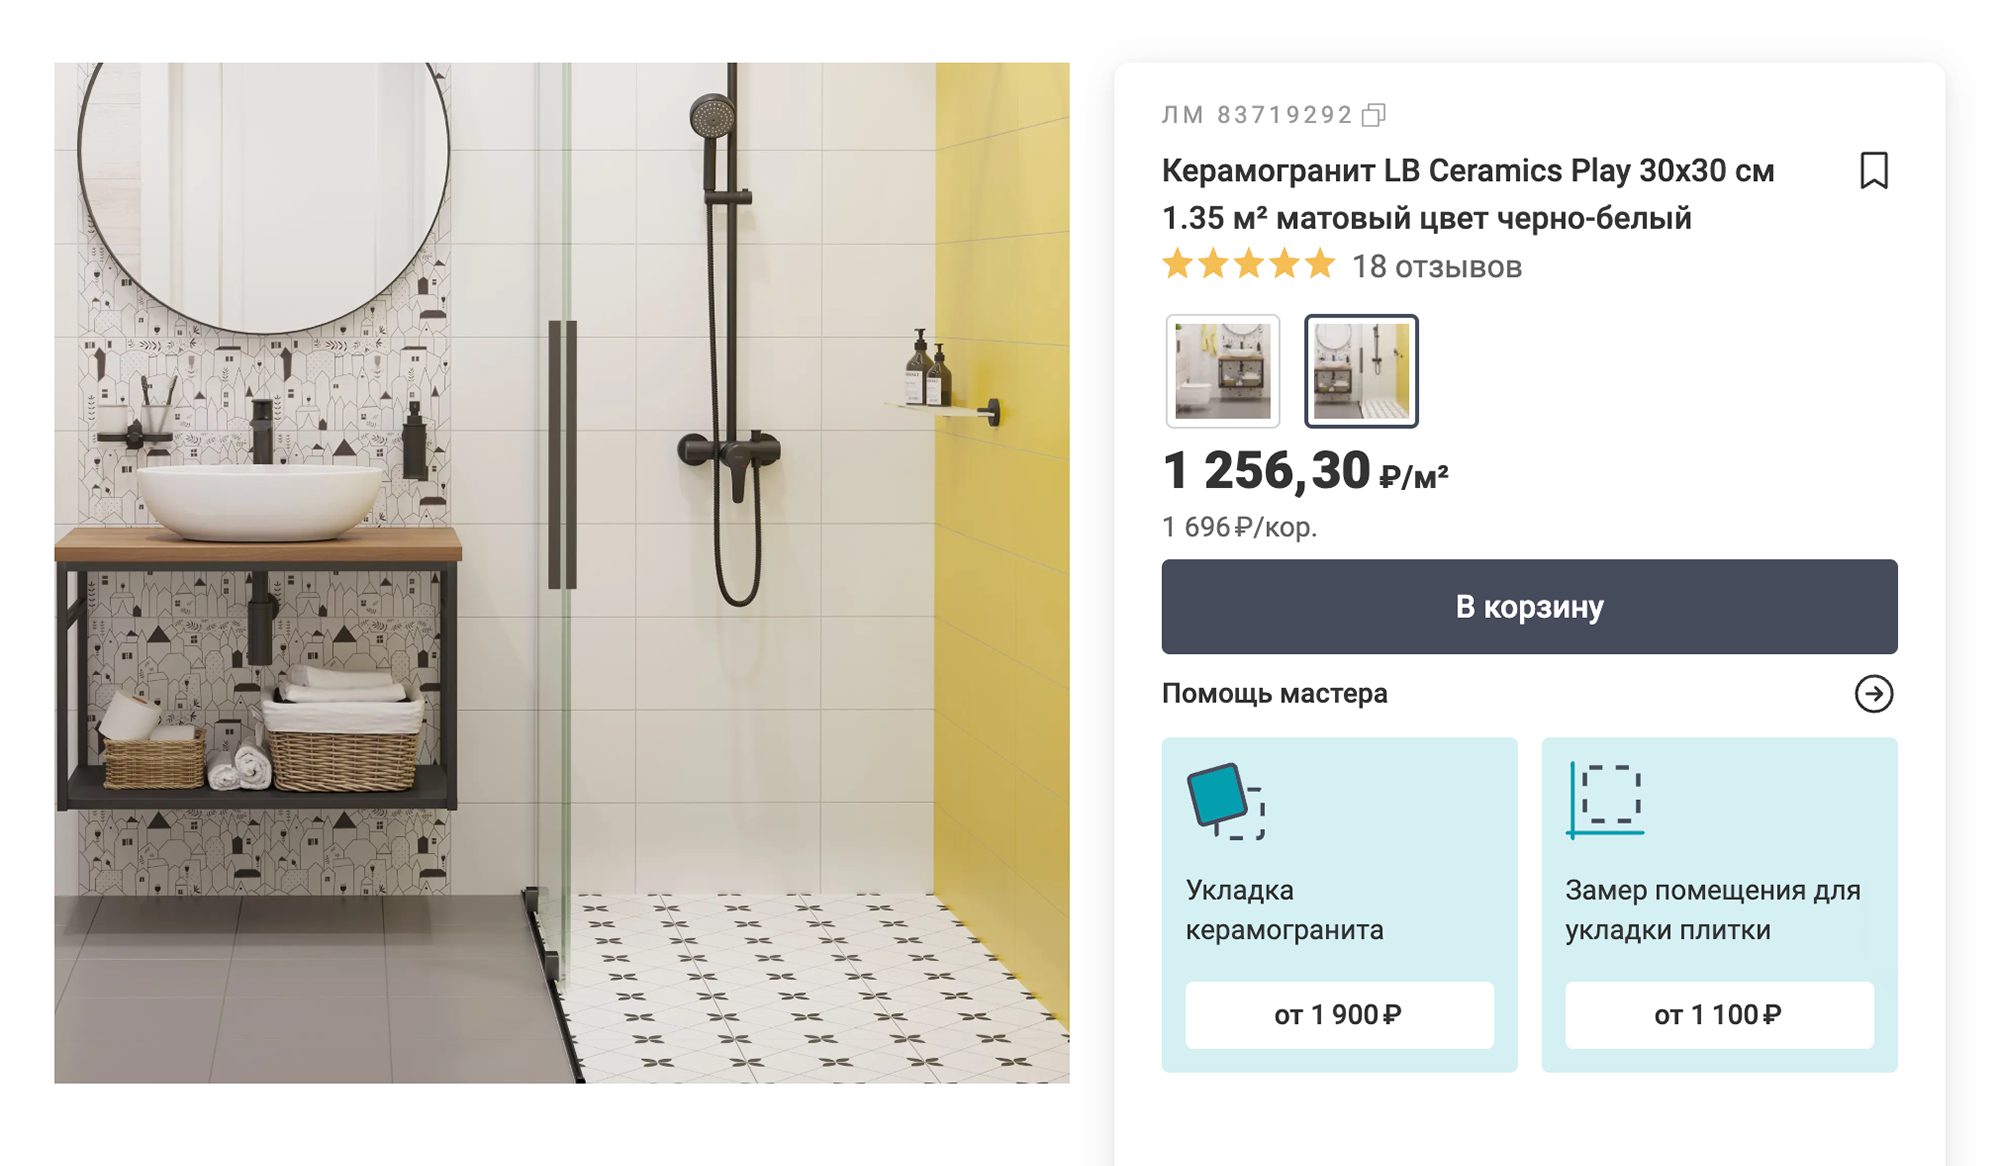 Мидсенчури-ванная: яркая желтая акцентная стена оттеняет черно-белые узоры на полу и стене с раковиной. Источник: leroymerlin.ru